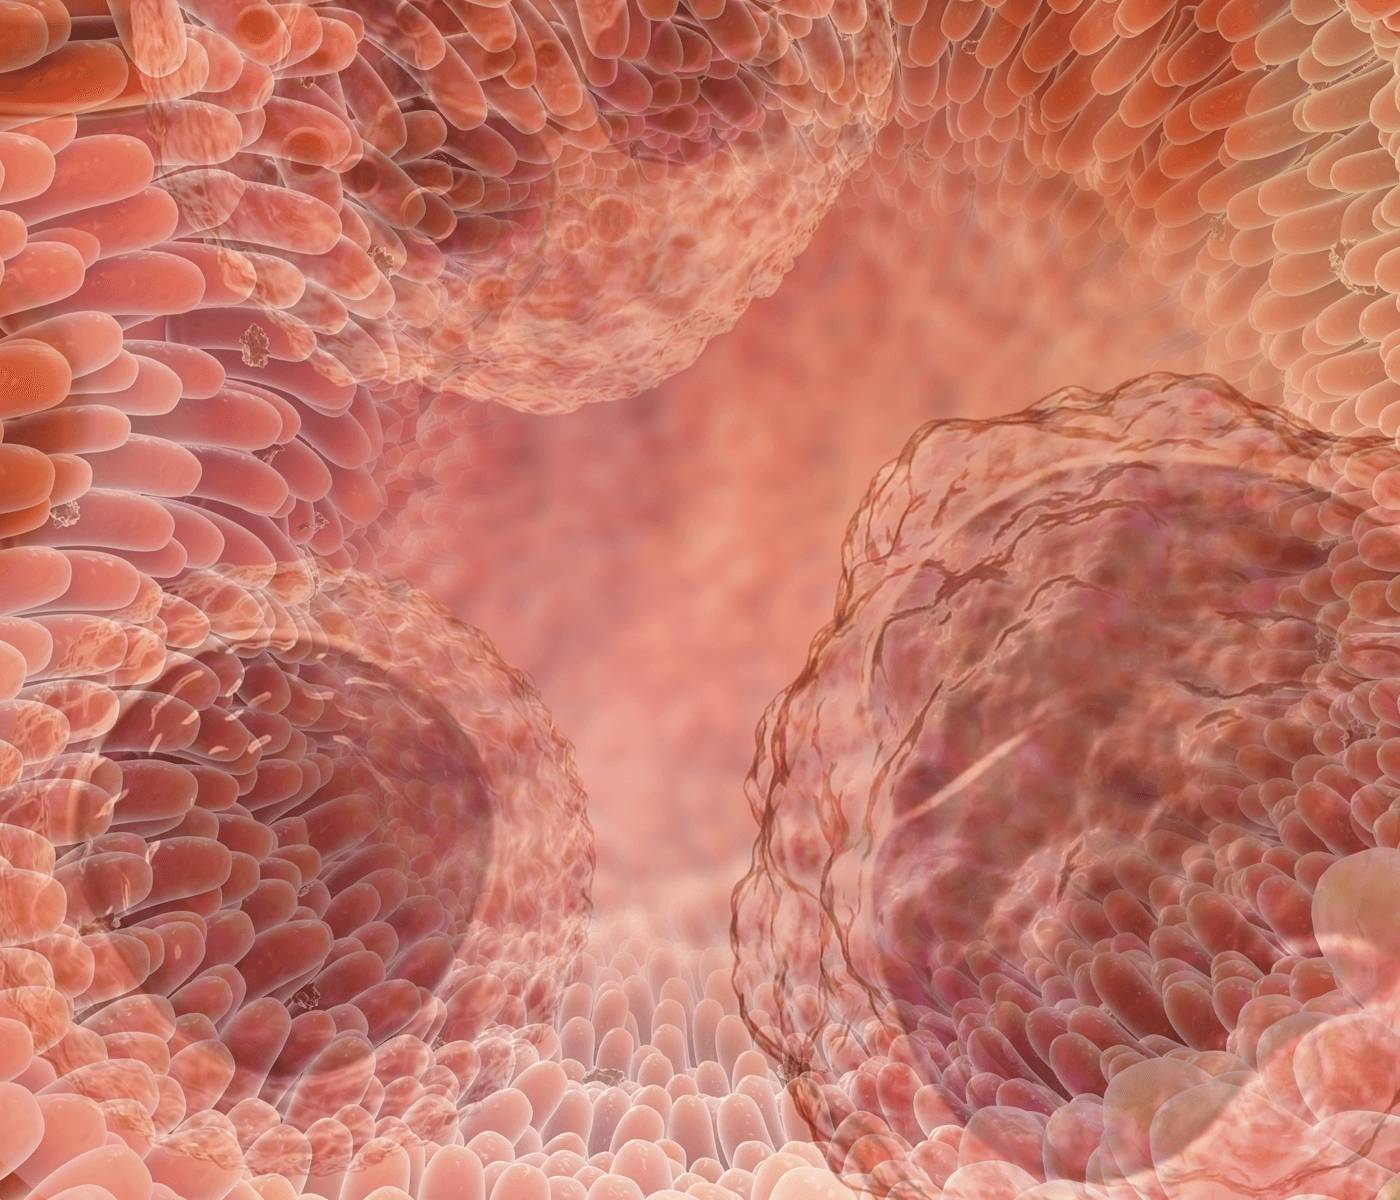 Intestino, o maior órgão imune do organismo – Parte I